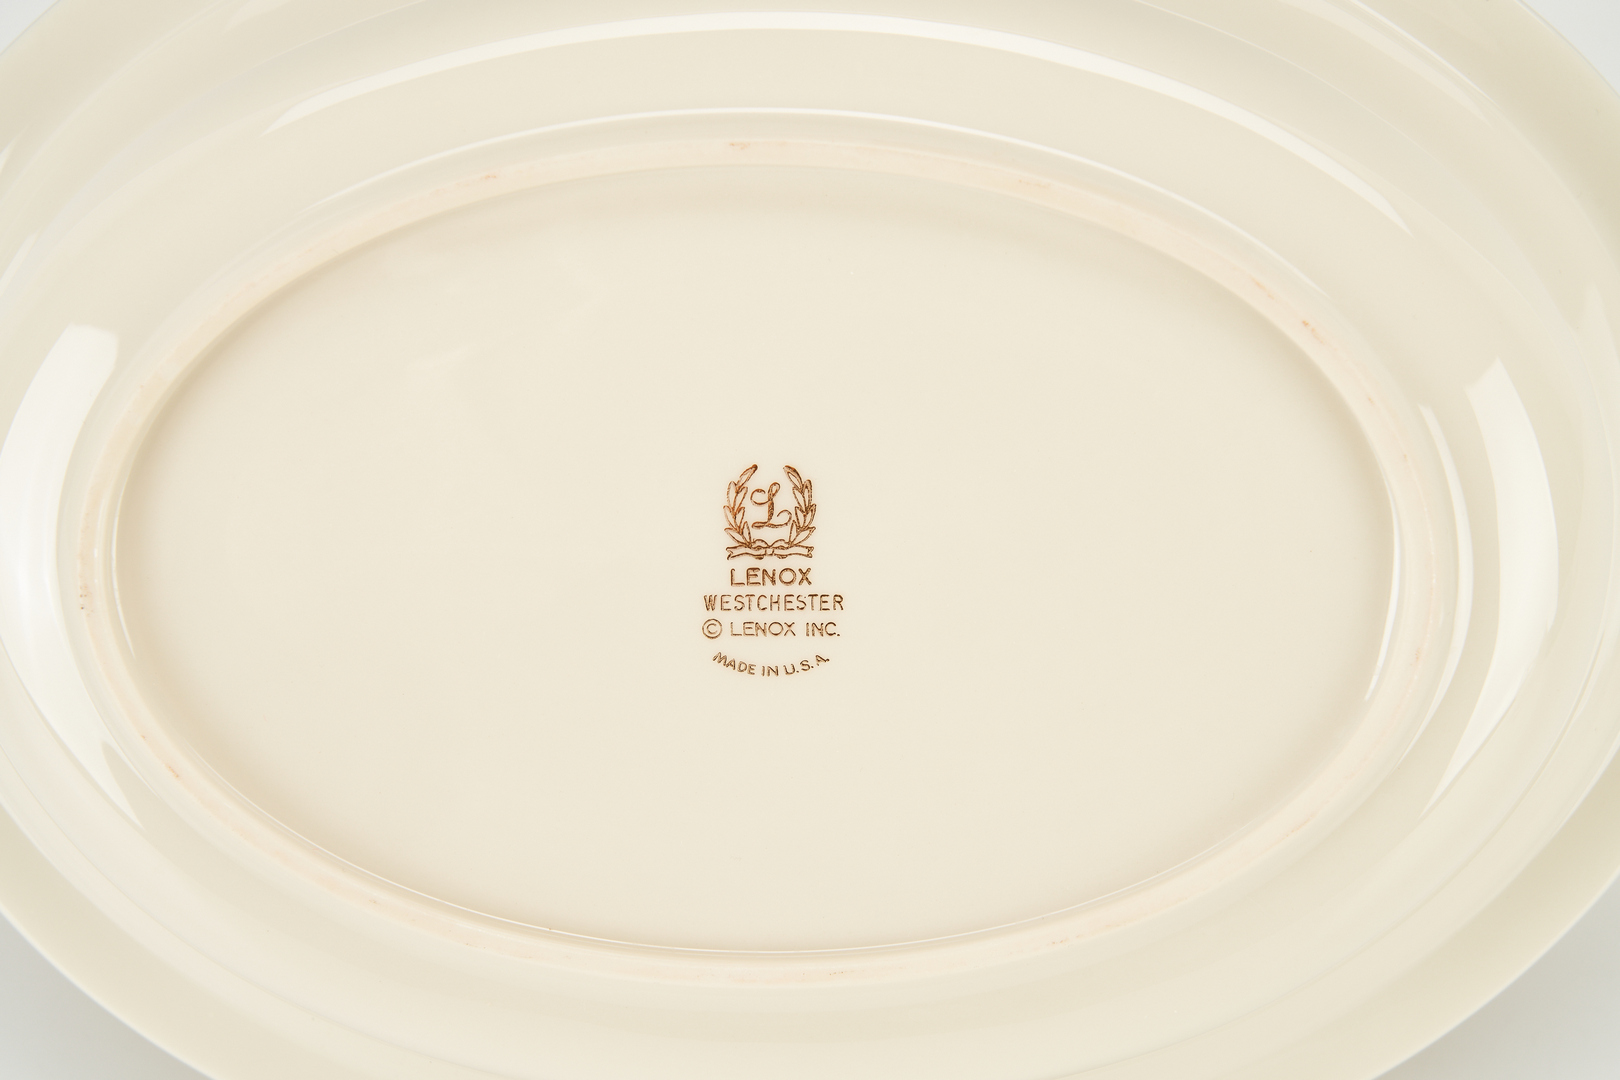 Lot 180: 89 Pcs. Lenox Westchester Pattern Porcelain Dinner Service